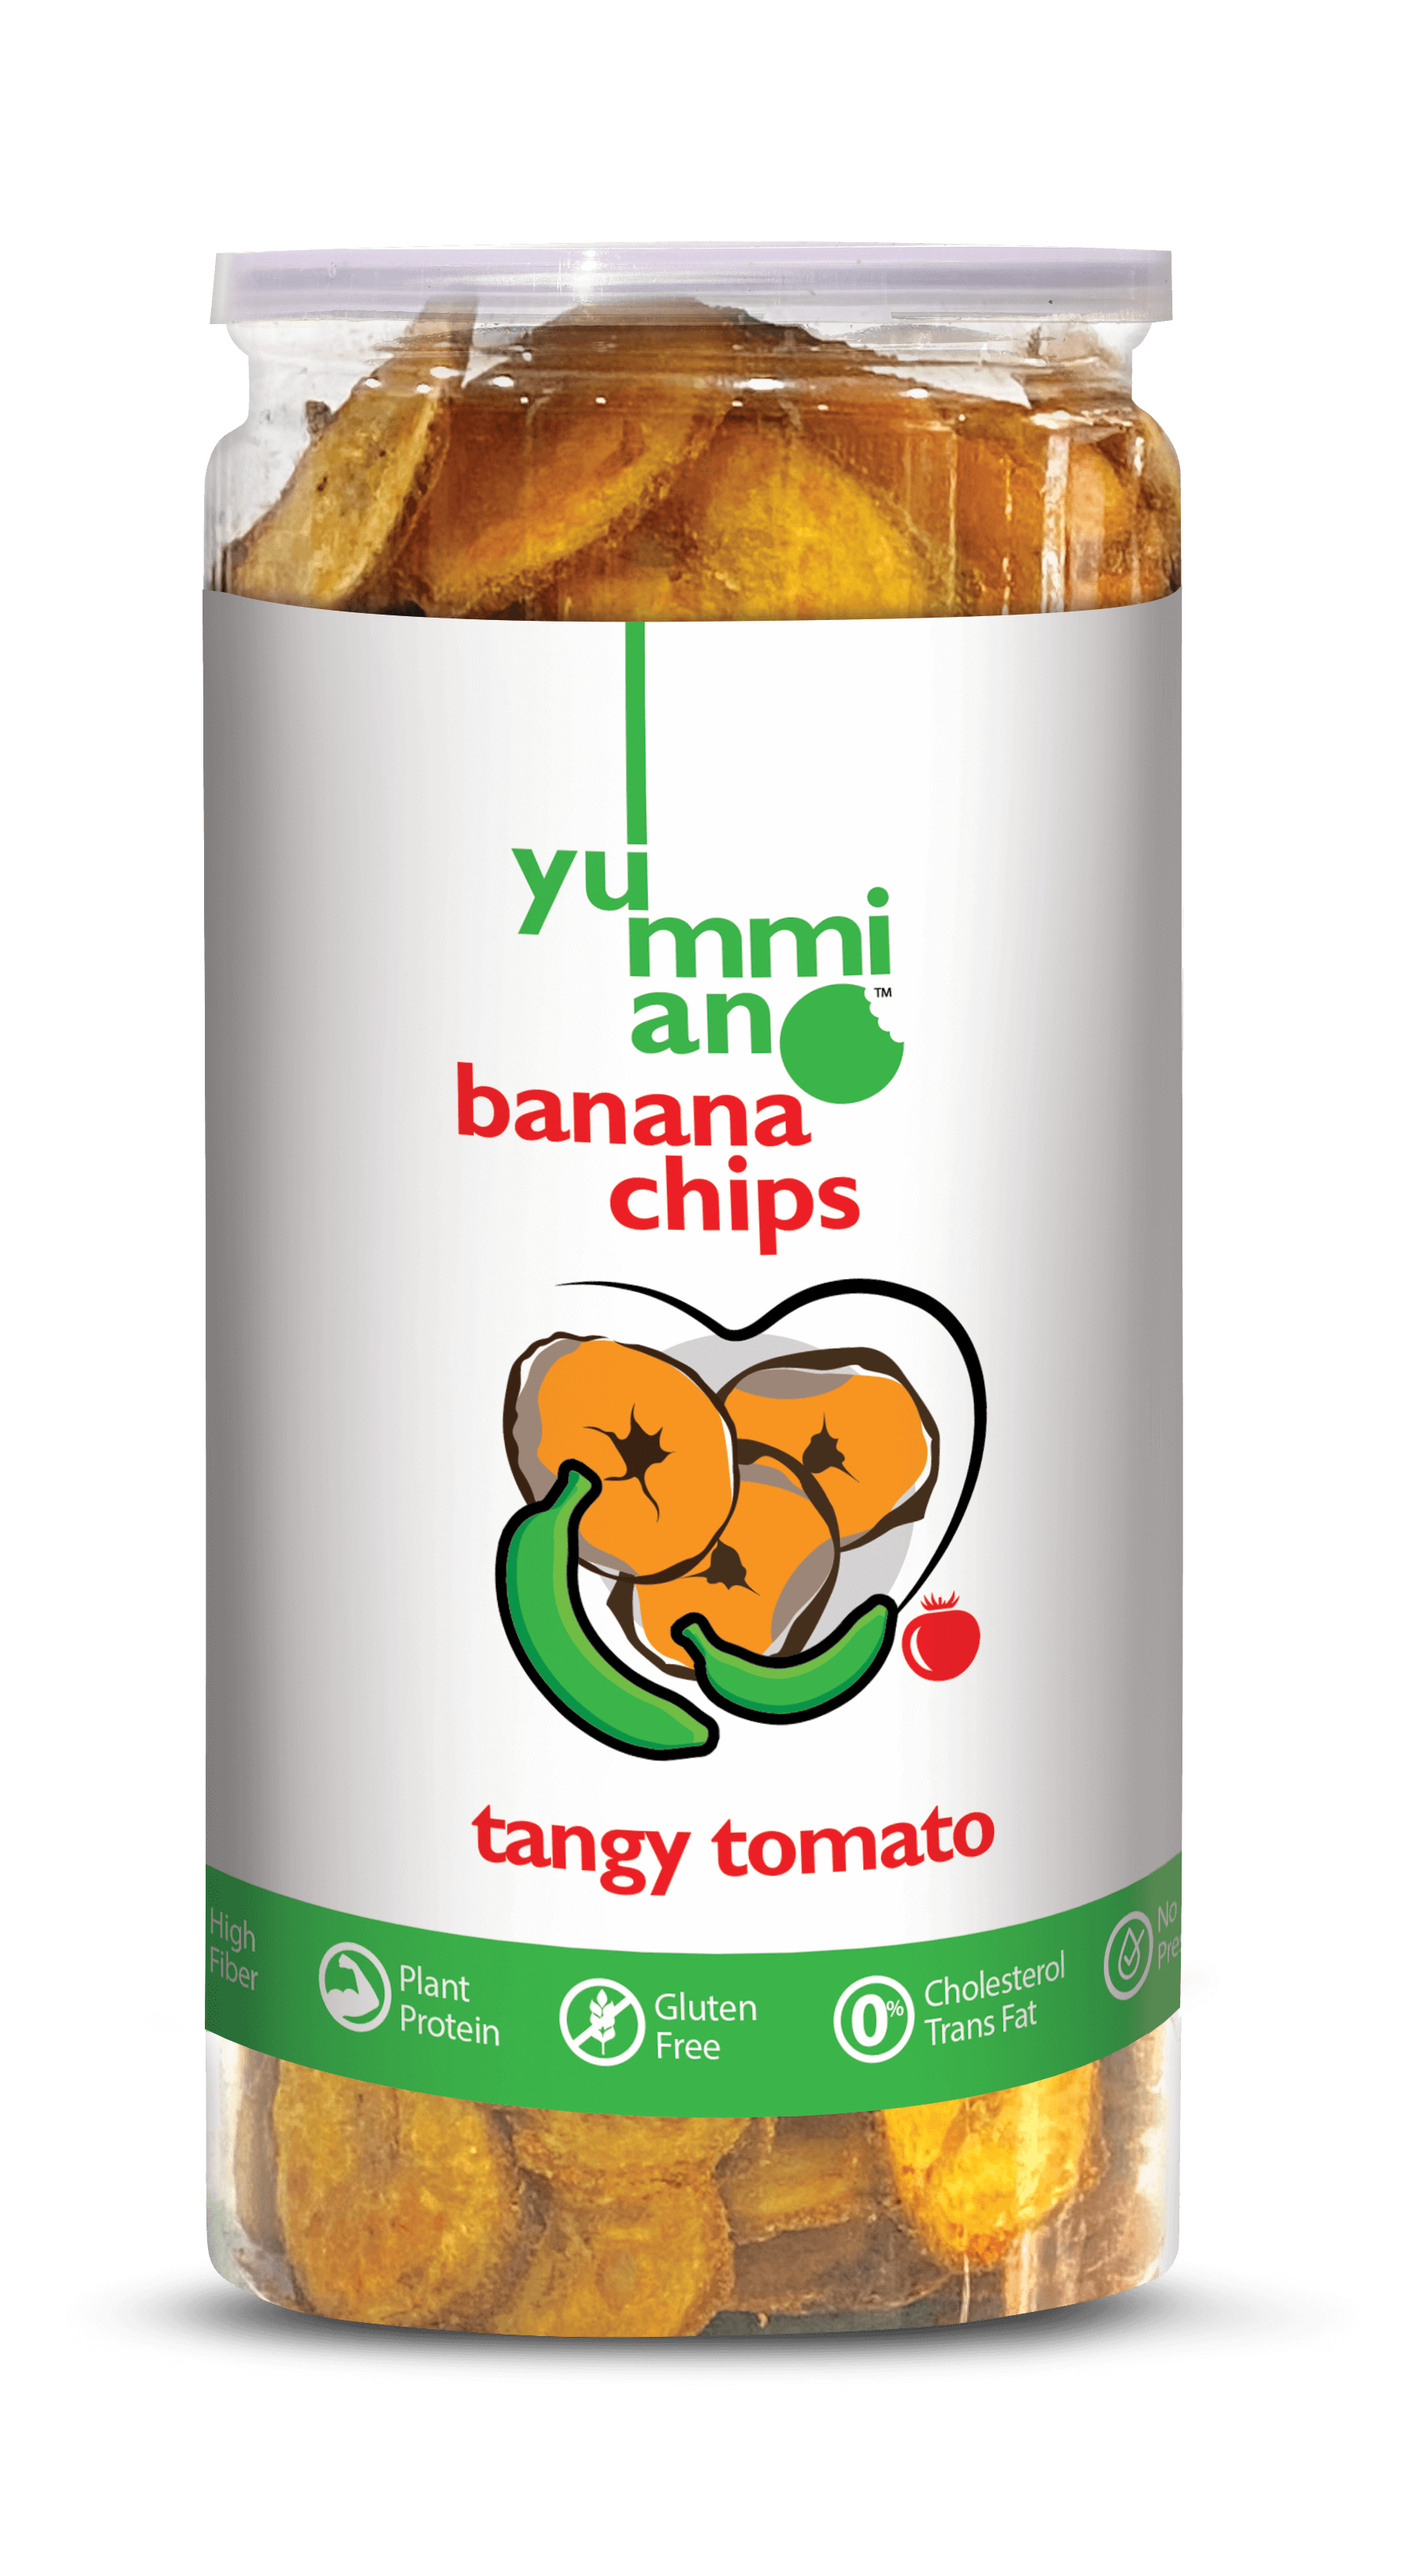 Yummiano Banana Chips â€šÃ„Ã¶âˆšÃ‘âˆšÂ¨ Tangy Tomato Image